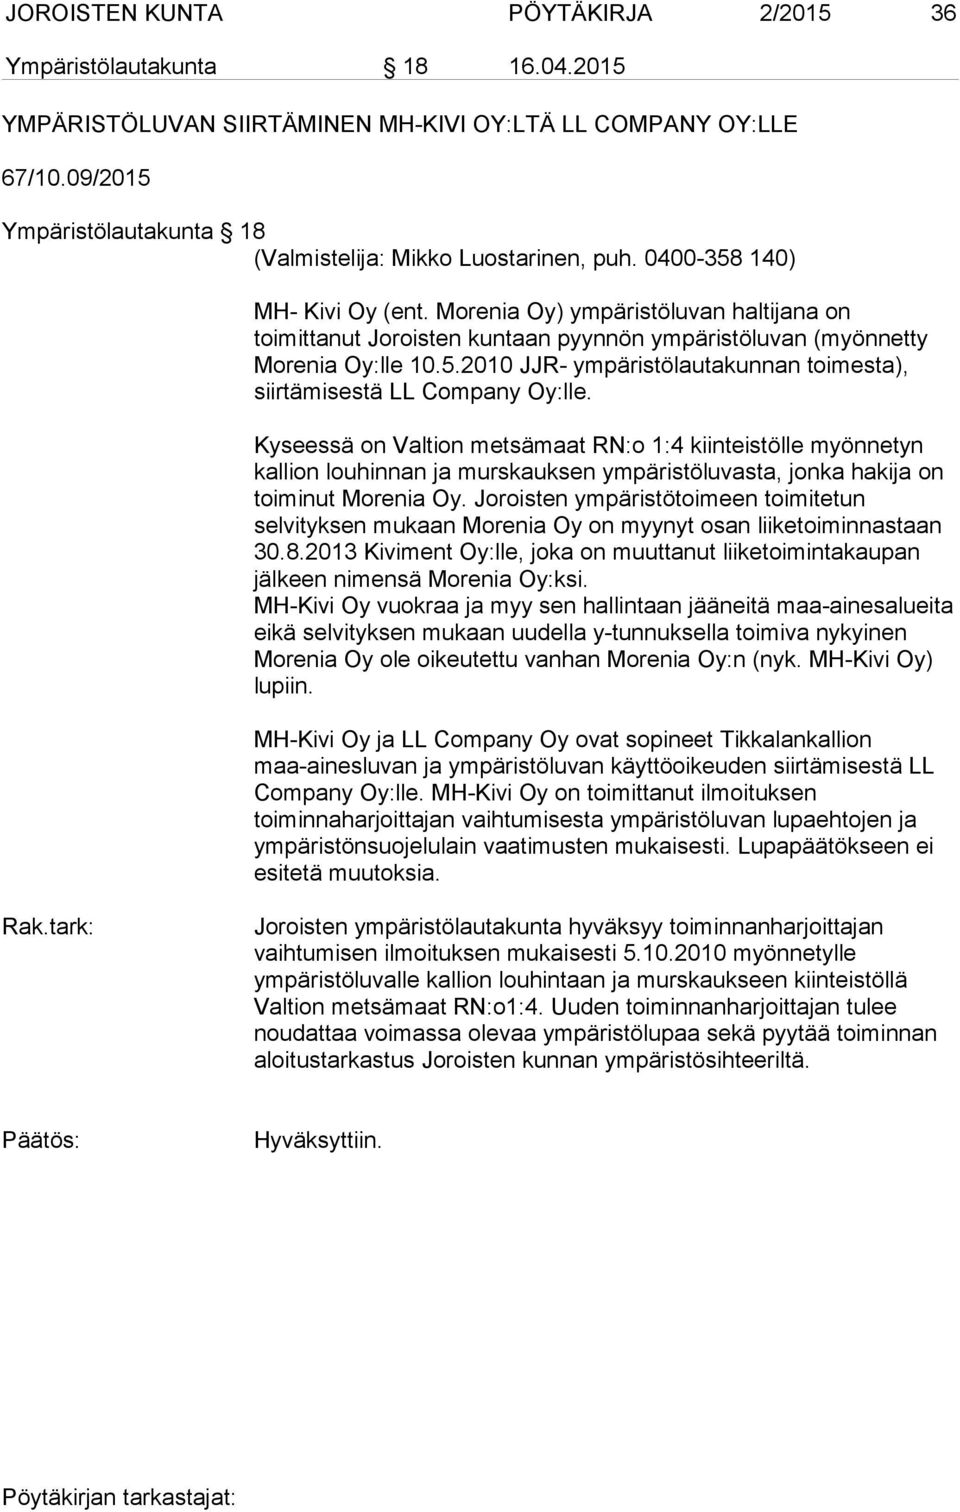 Morenia Oy) ympäristöluvan haltijana on toimittanut Joroisten kuntaan pyynnön ympäristöluvan (myönnetty Morenia Oy:lle 10.5.2010 JJR- ympäristölautakunnan toimesta), siirtämisestä LL Company Oy:lle.